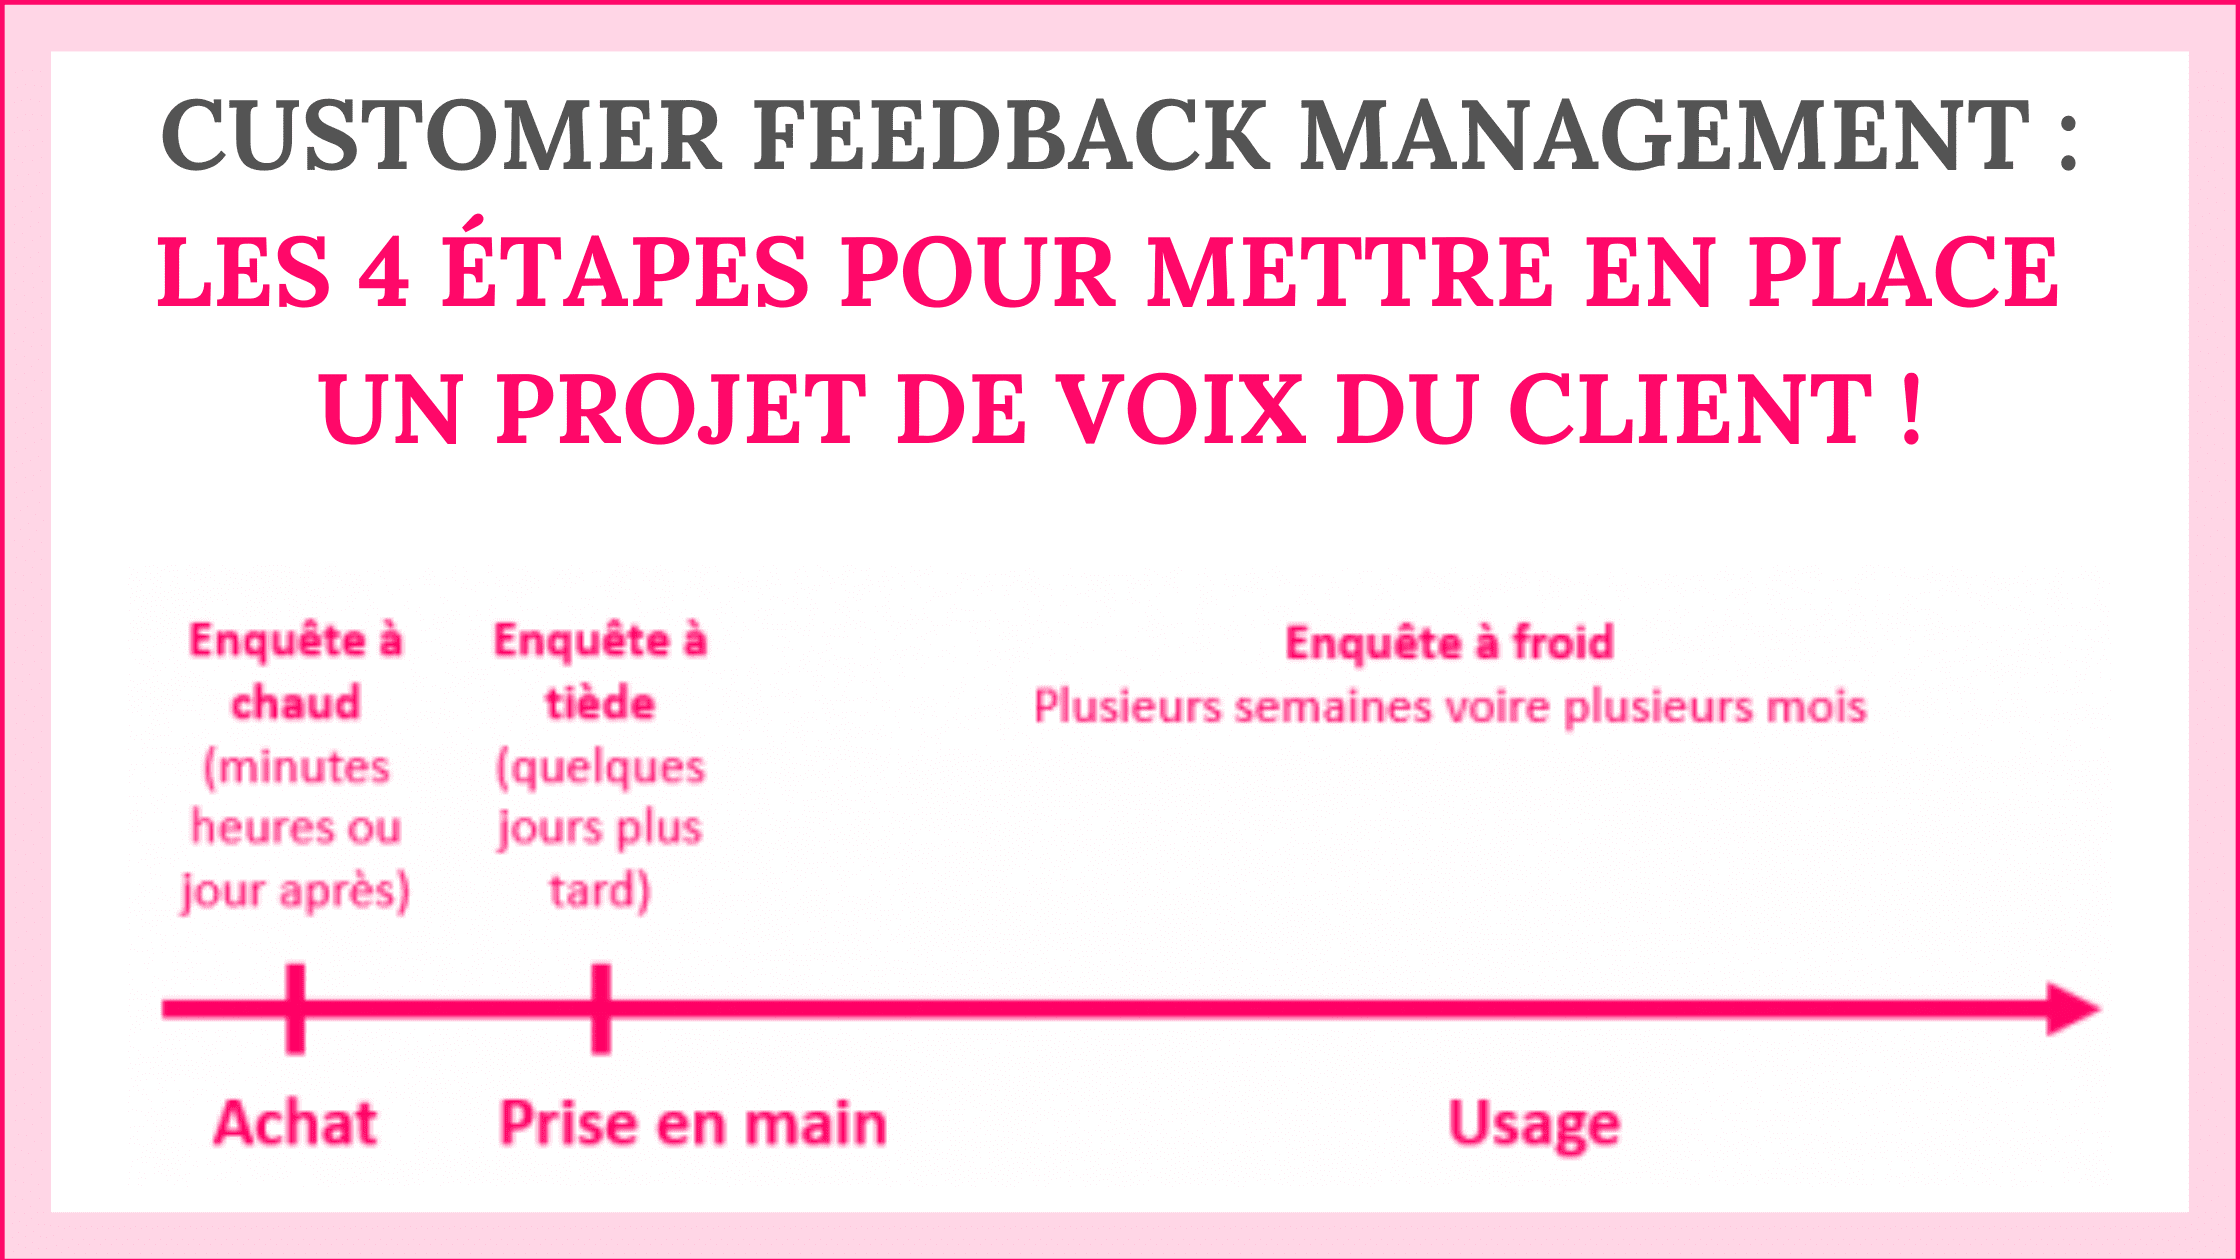 Customer Feedback Management : les 4 étapes pour mettre en place un projet de Voix du Client ! 8